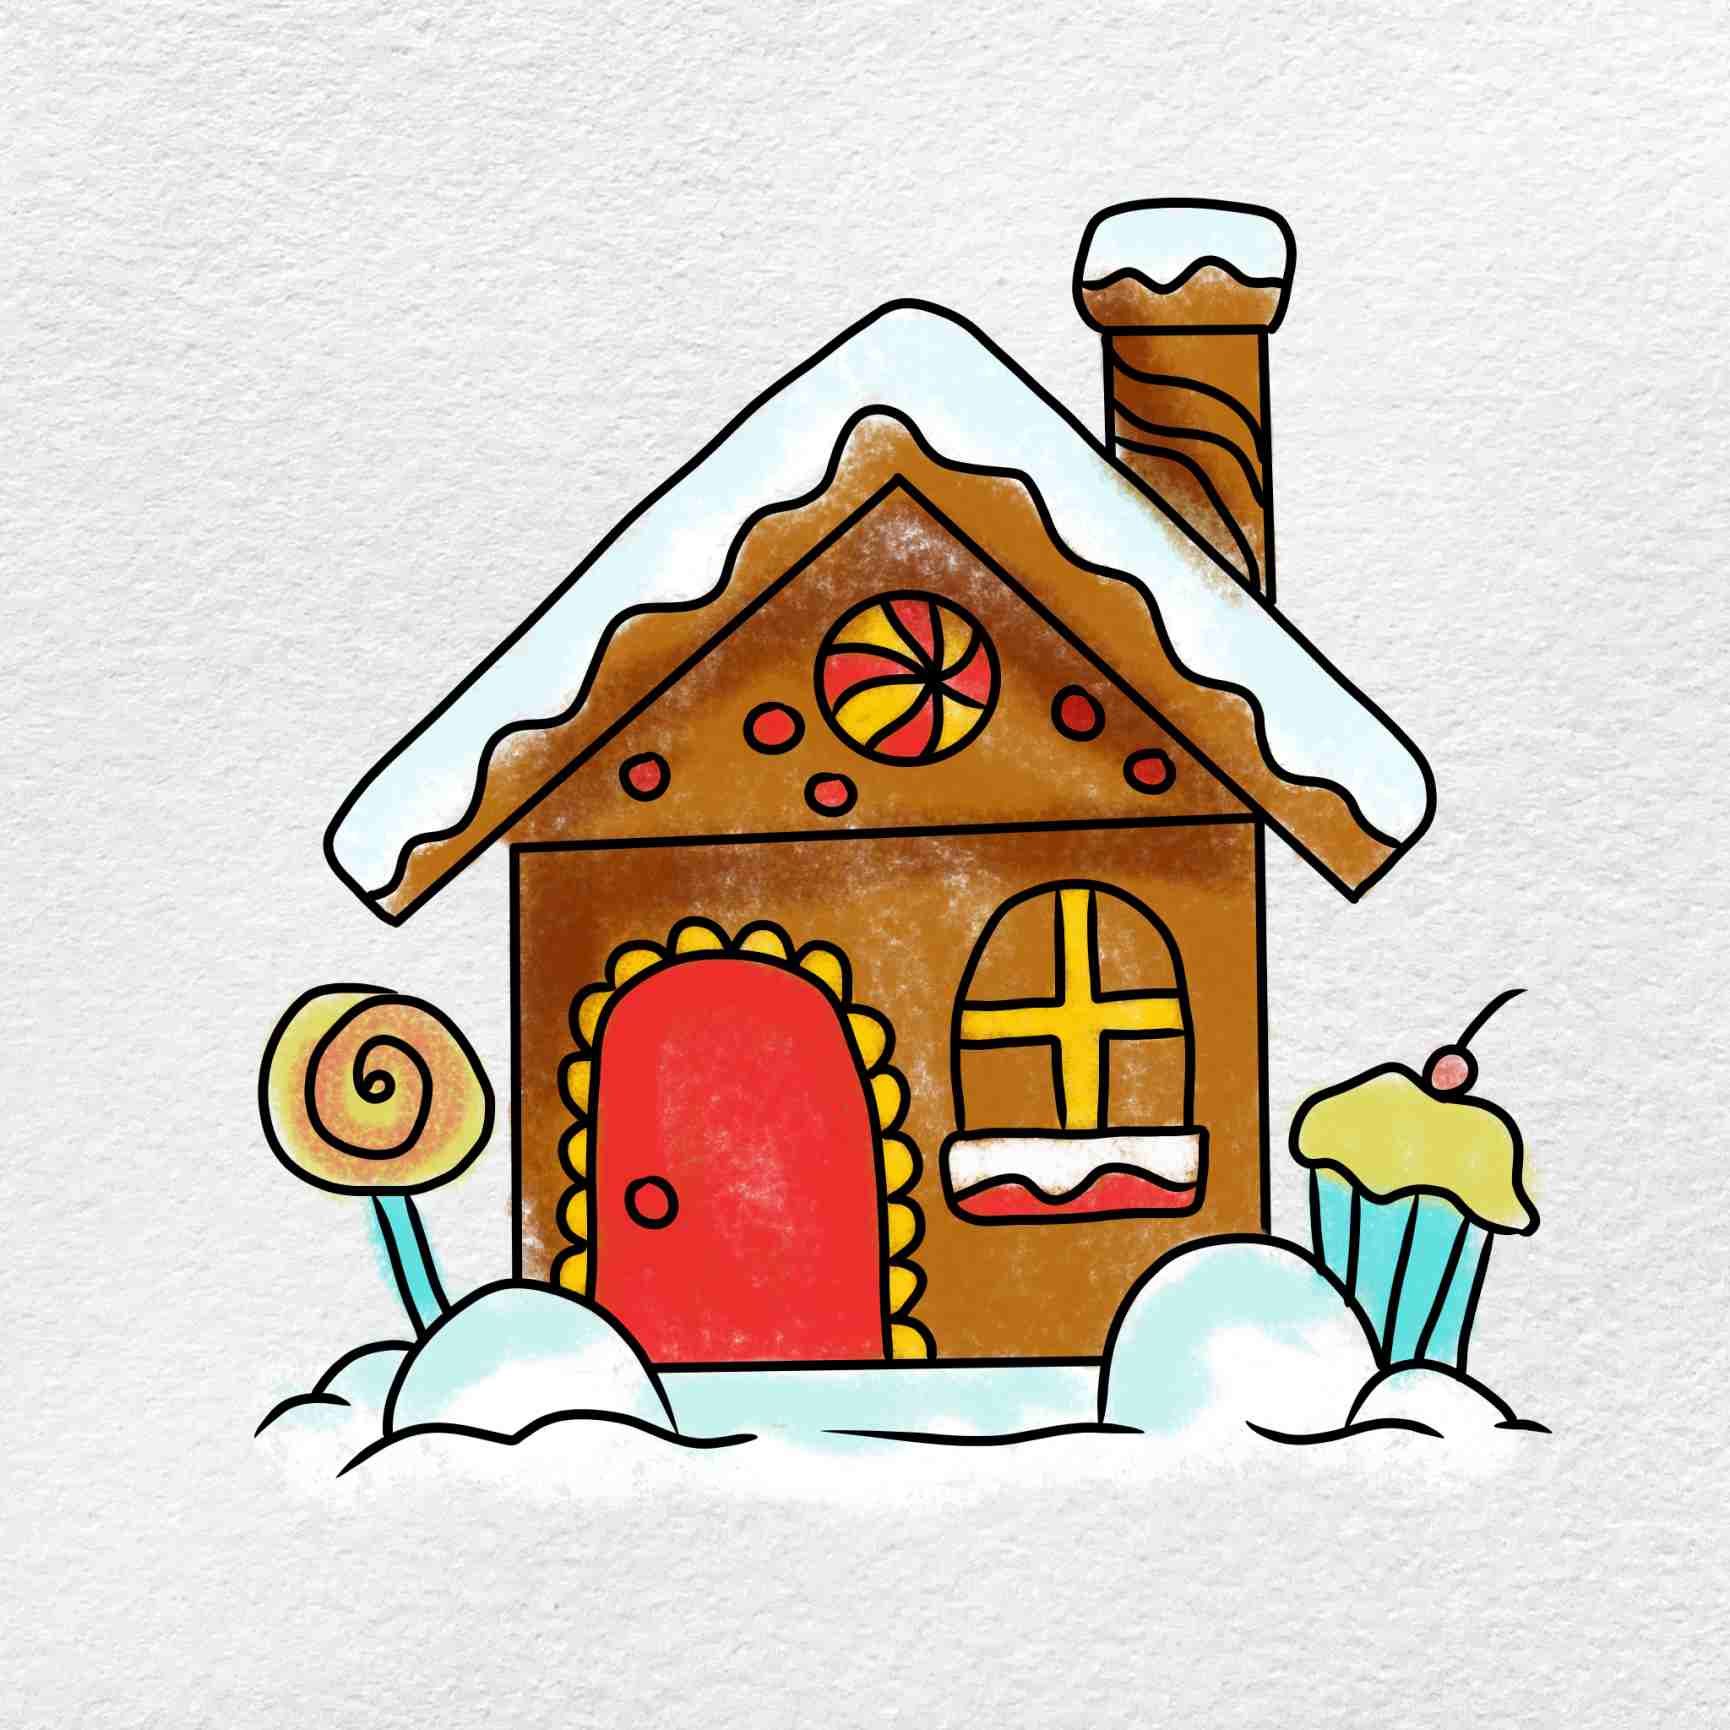 Vẽ ngôi nhà tuyết, một cảm giác thần tiên và lãng mạn cho bạn đón giáng sinh. Hãy tìm thấy hạnh phúc của bạn trong những họa tiết tuyết rơi độc đáo, màu sắc tươi sáng và nhiều điểm nhấn khác trong bức tranh này.